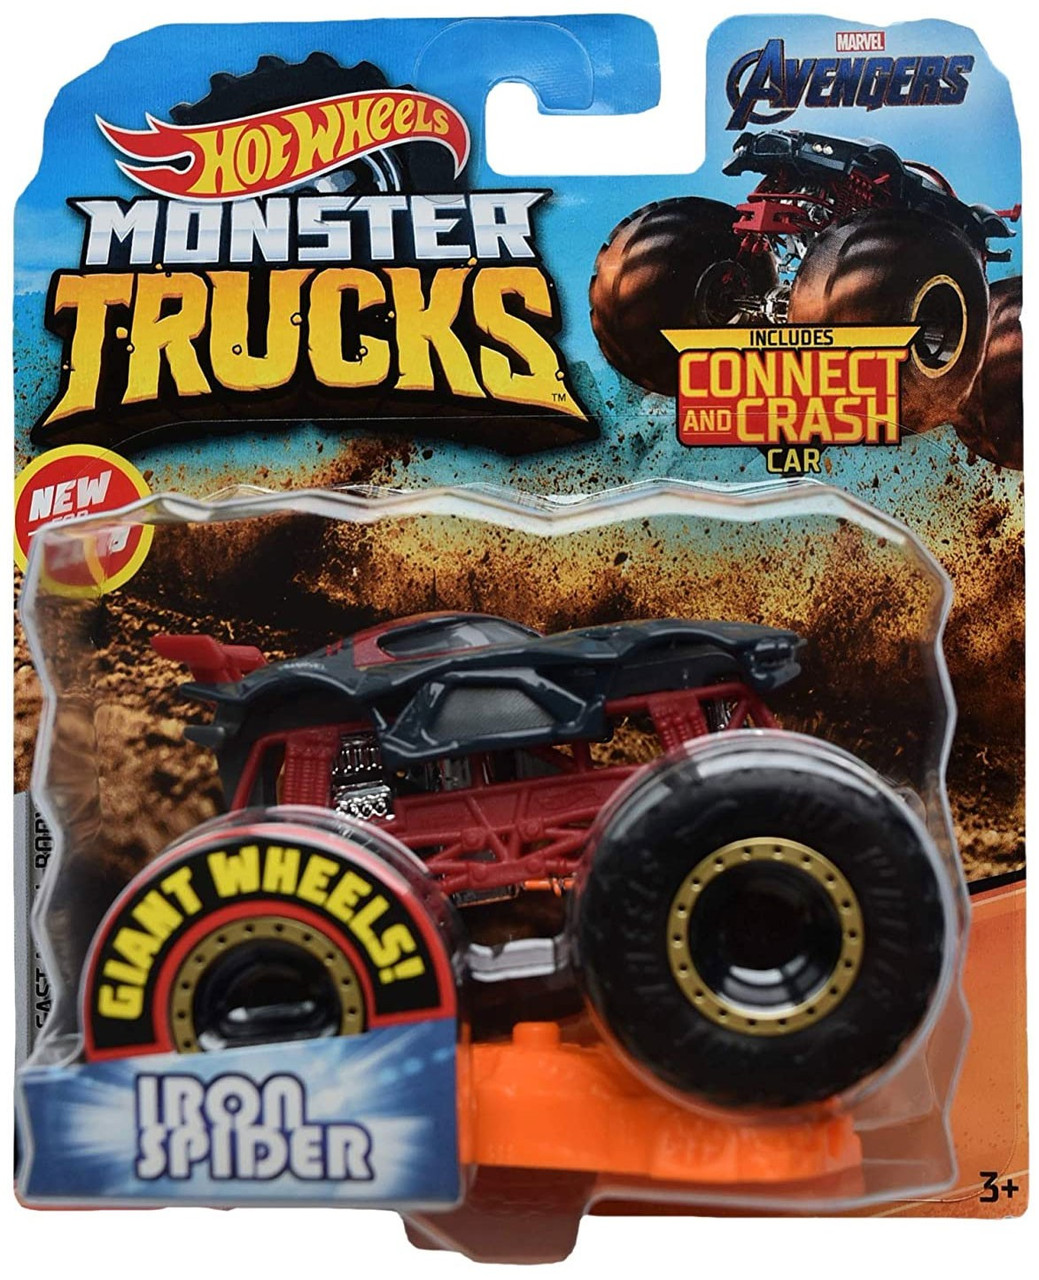 avenger monster truck toy